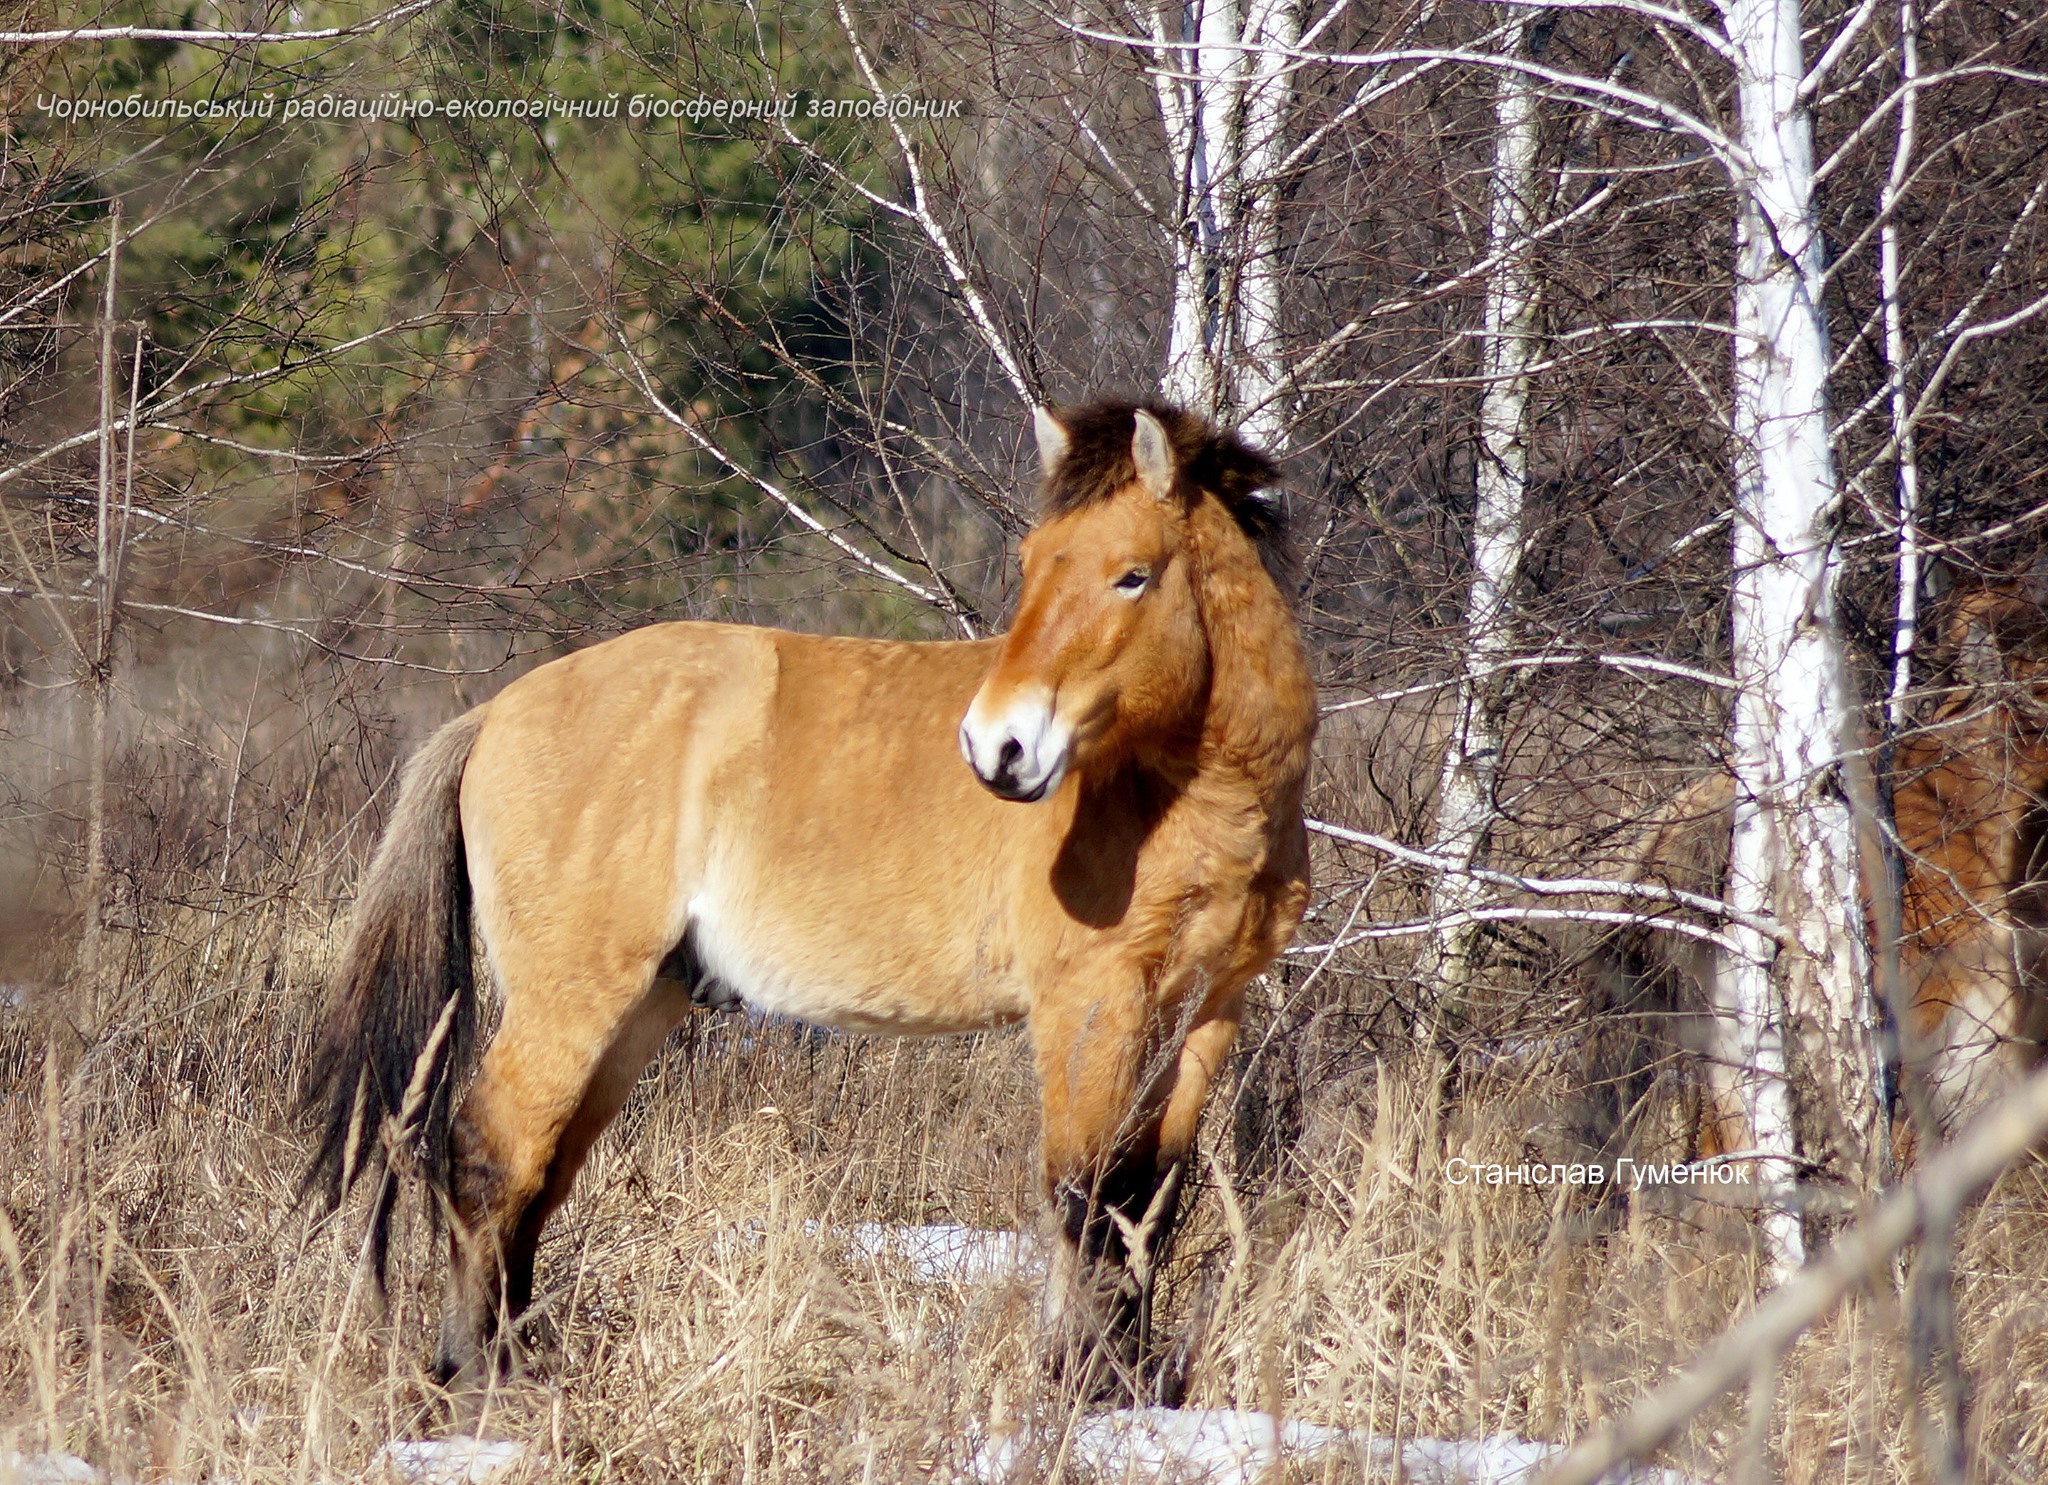 на снимках Станислава Гуменюка лошади, радуясь весенней теплой погоде, гуляют по территории заповедника